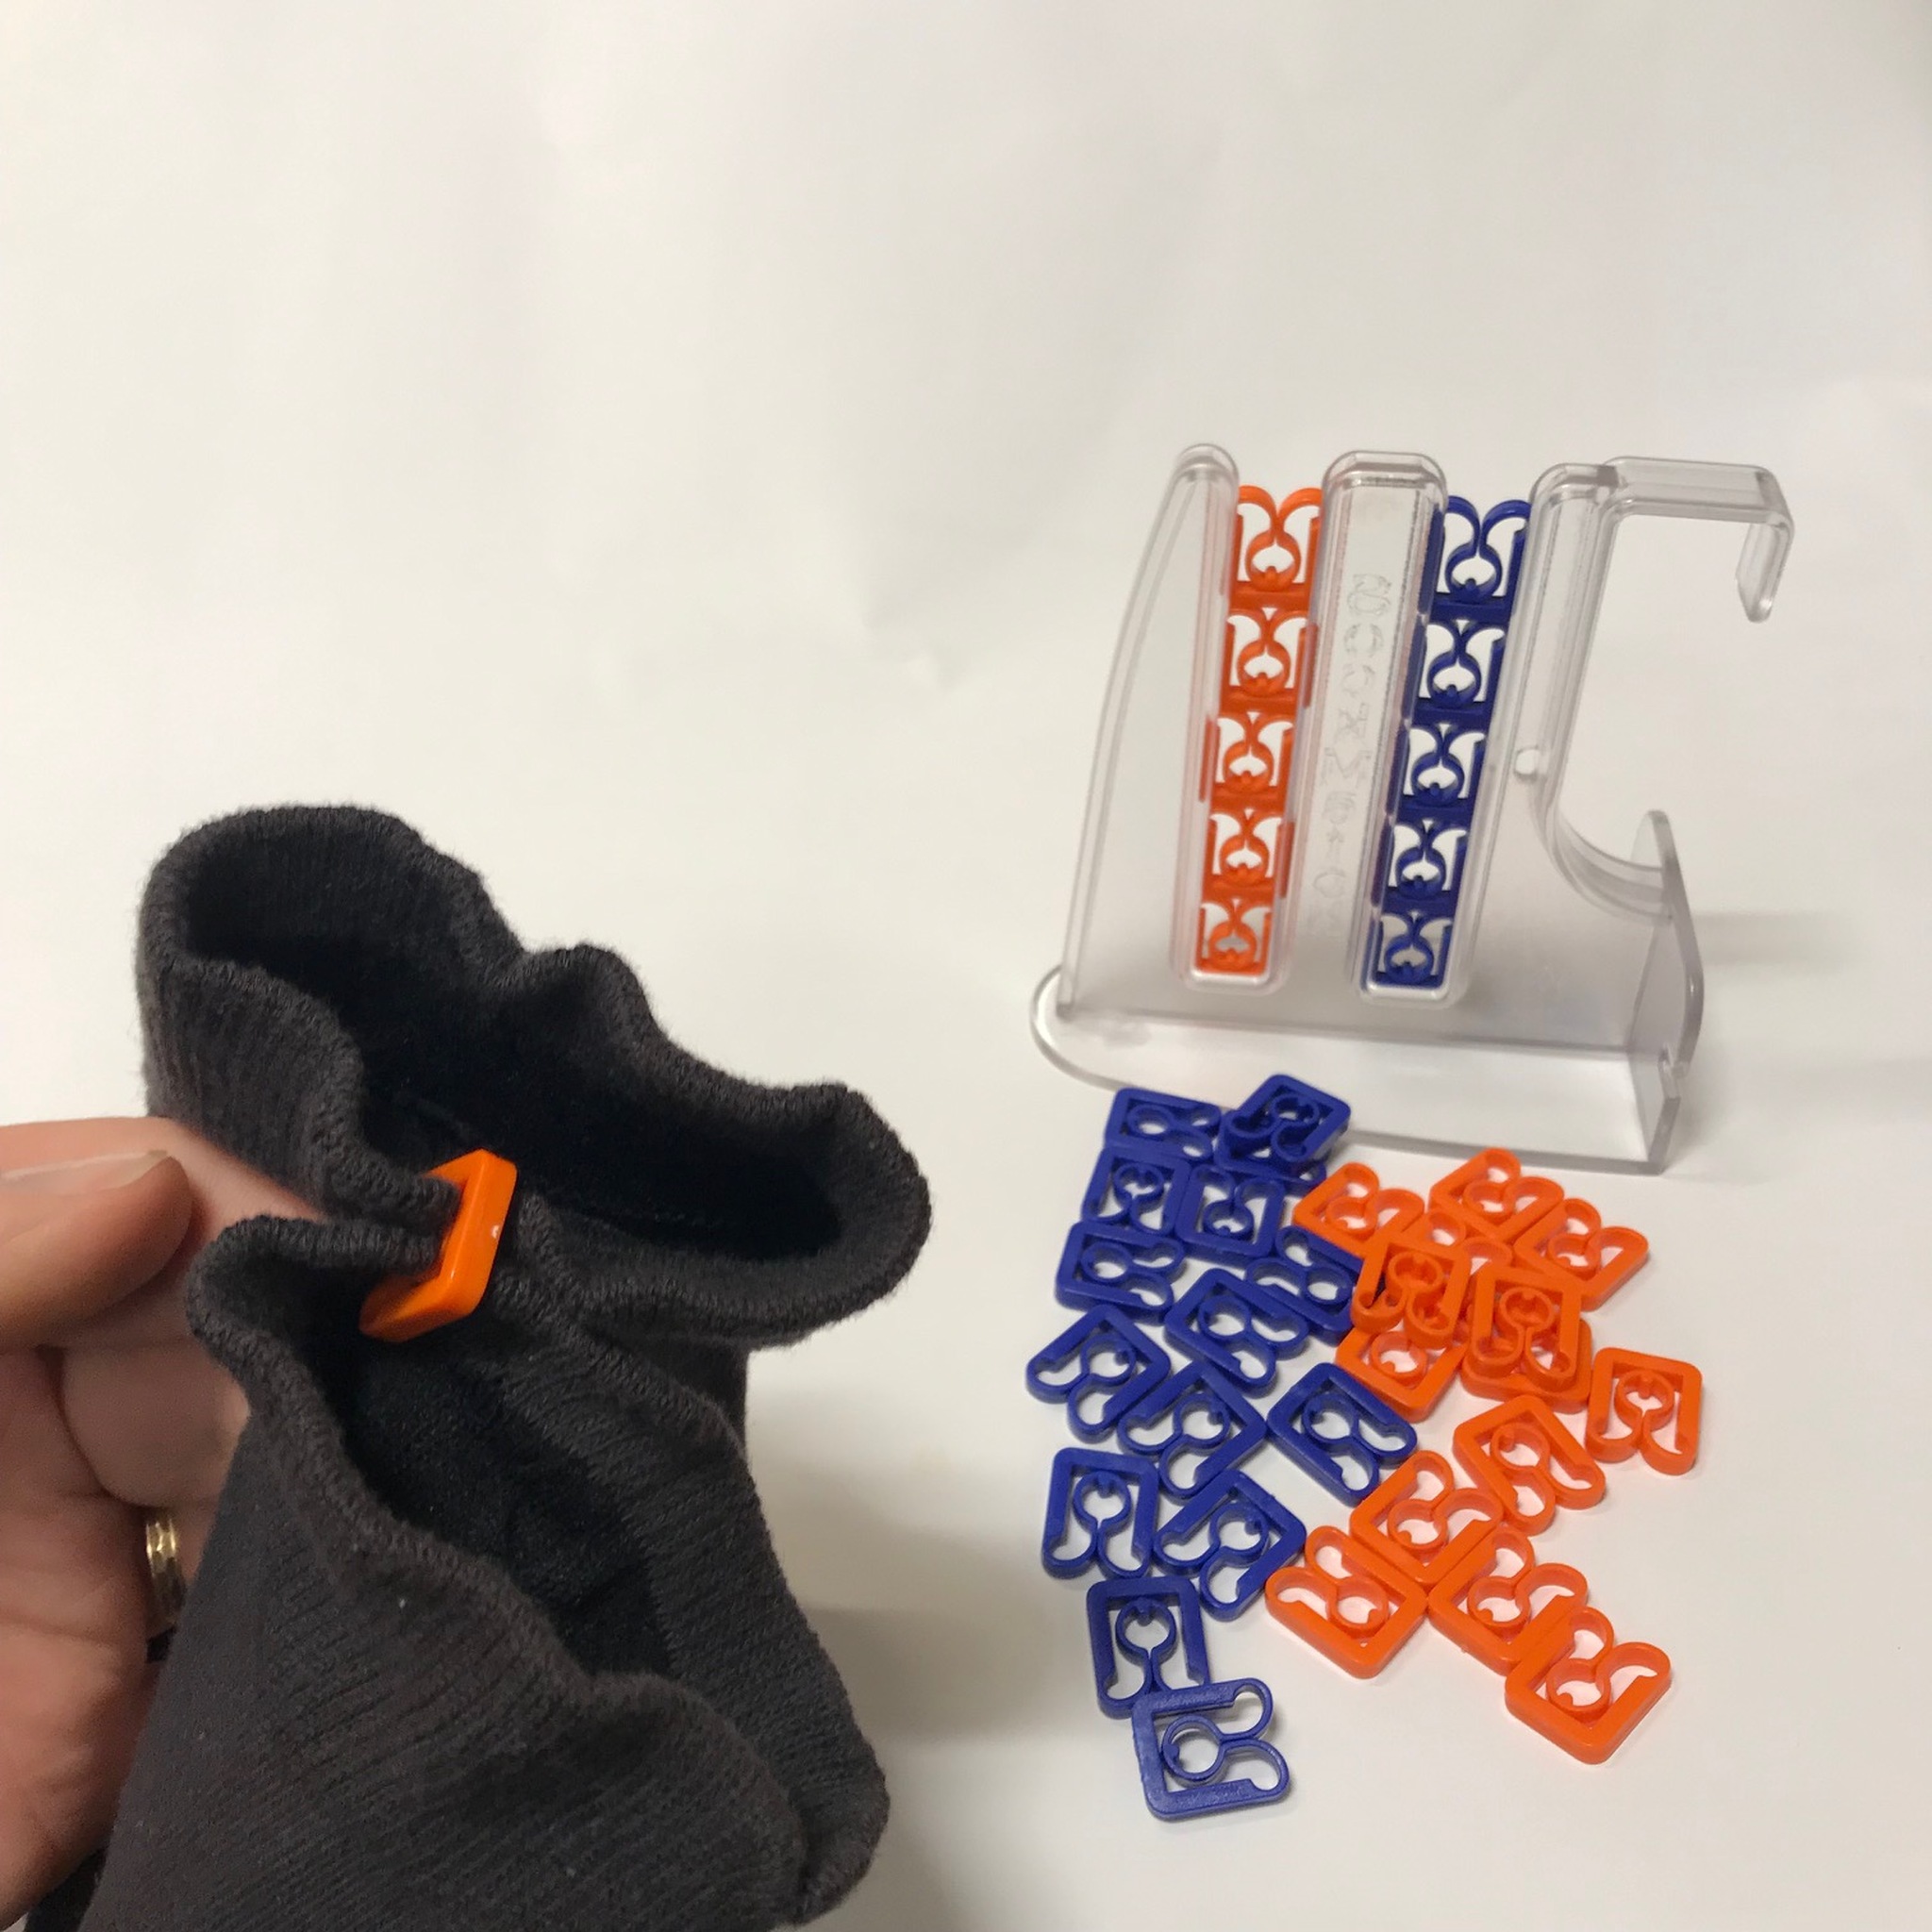 Sockmatch transparant hållare med orange och blå clips